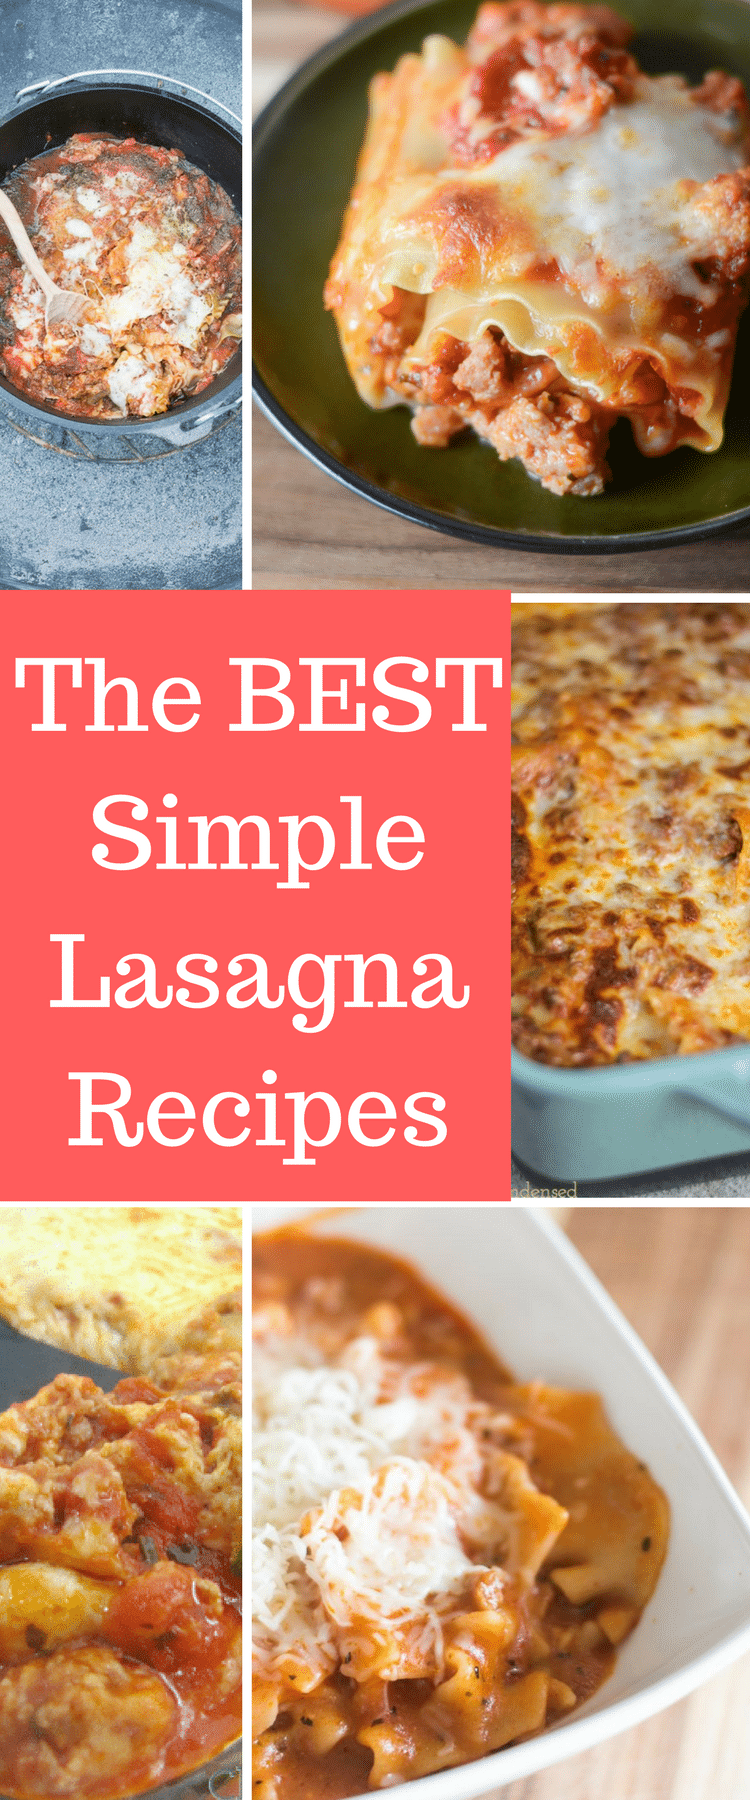 Simple lasagna recipes